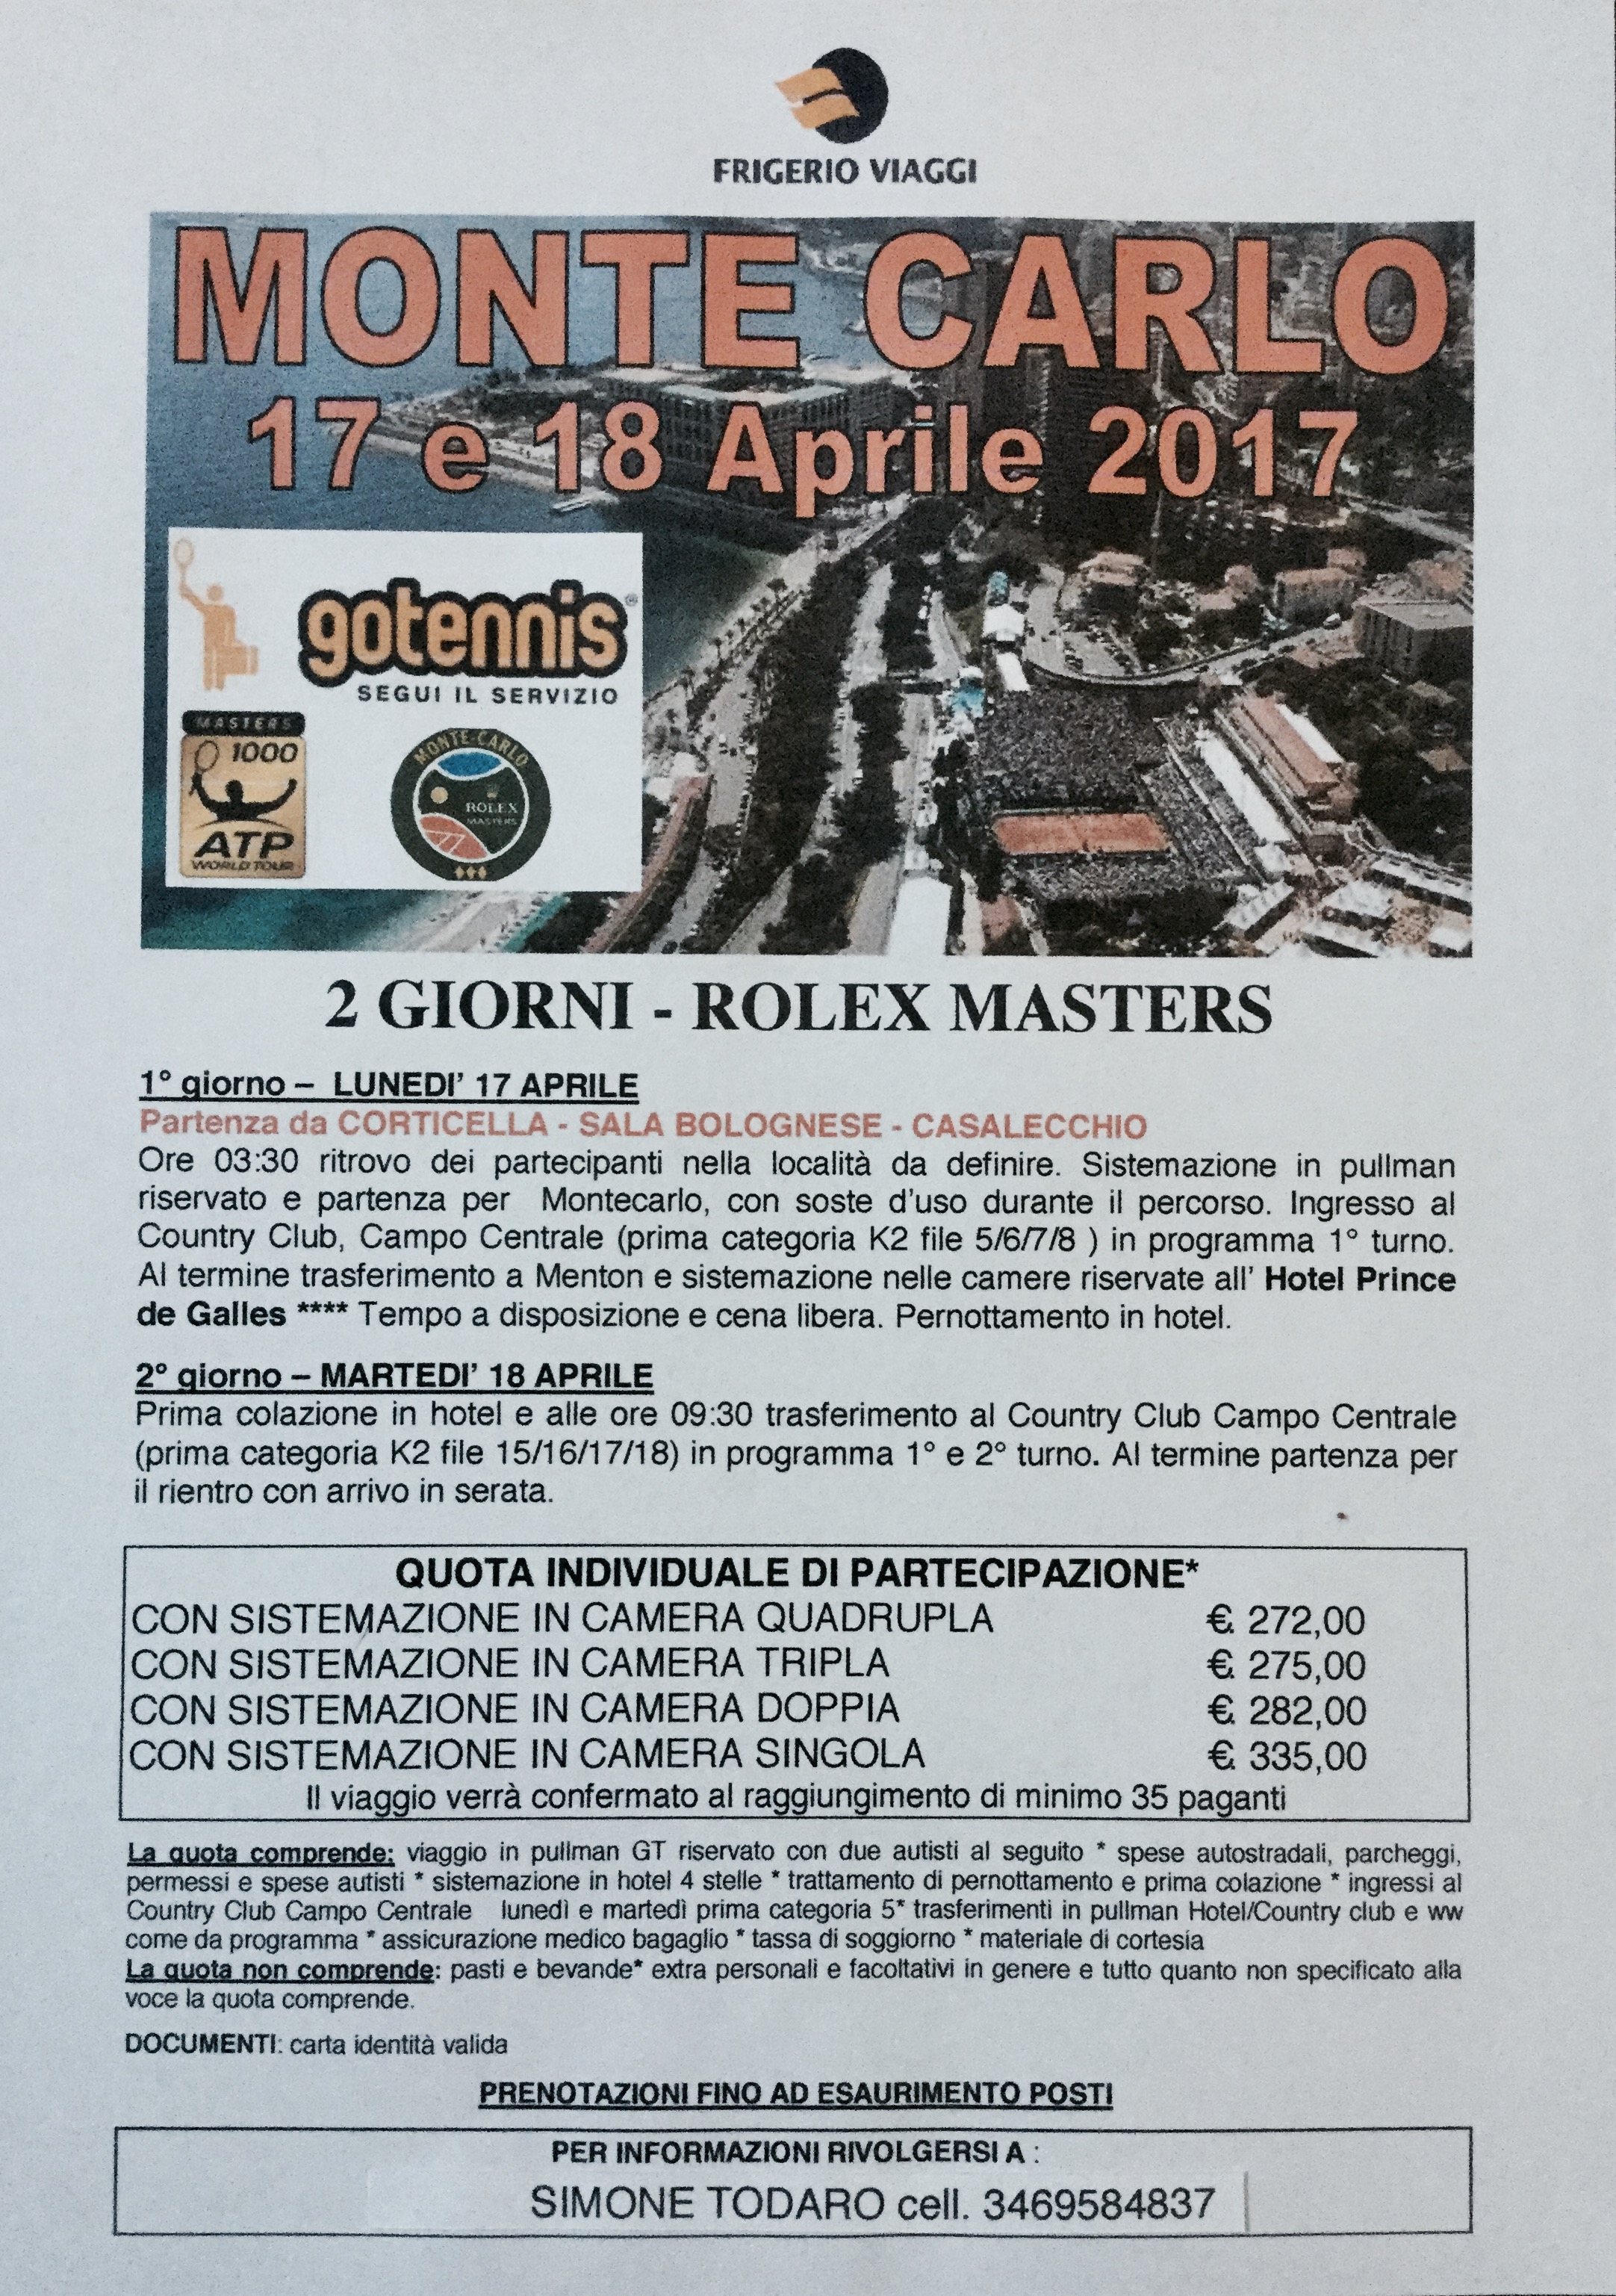 Monte-Carlo Rolex Master 17-18 aprile 2017